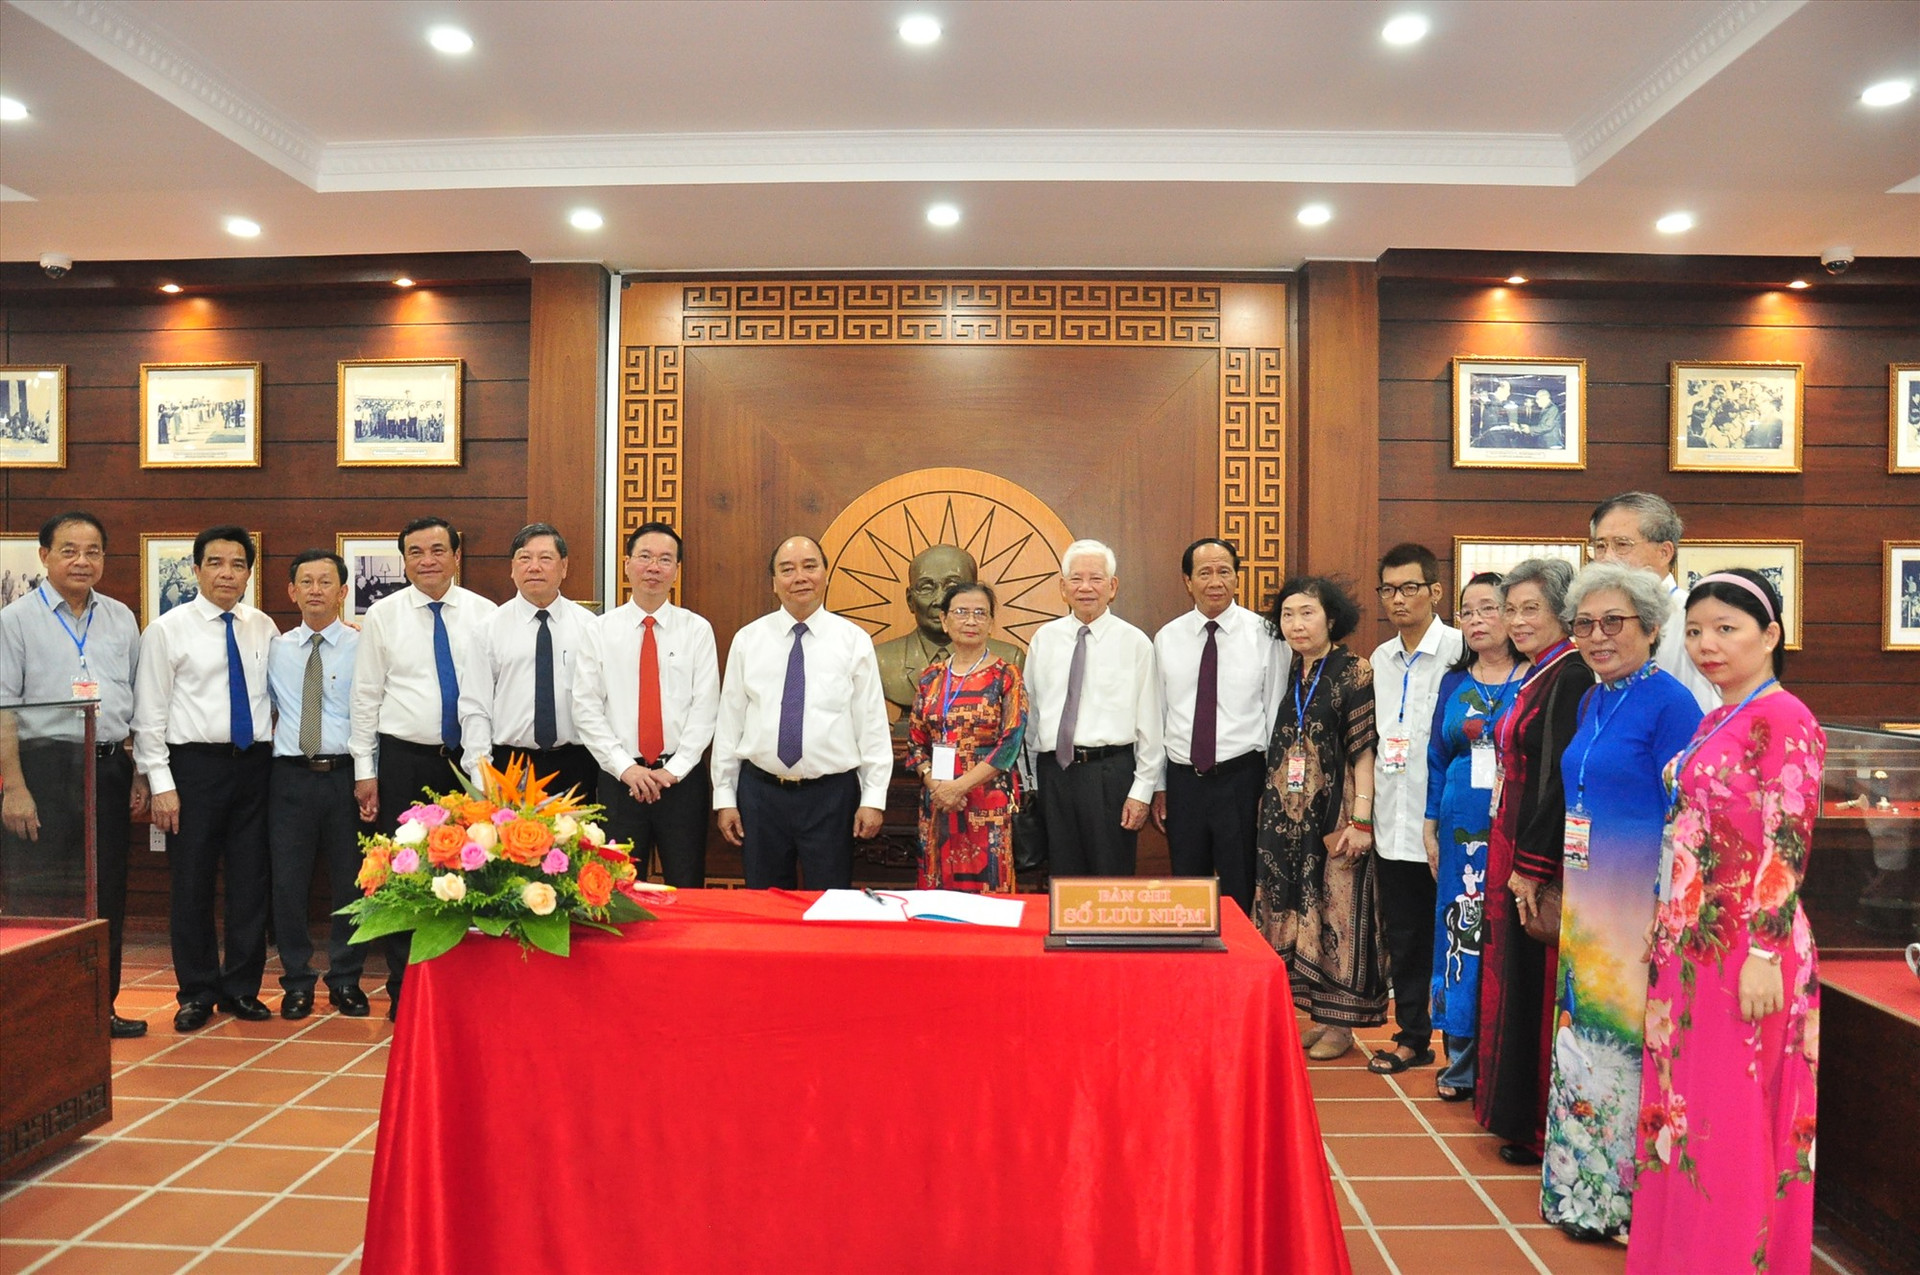 Đoàn lãnh đạo Đảng, Nhà nước chụp hình lưu niệm với gia đình đồng chí Võ Chí Công. Ảnh: Đ.C.A